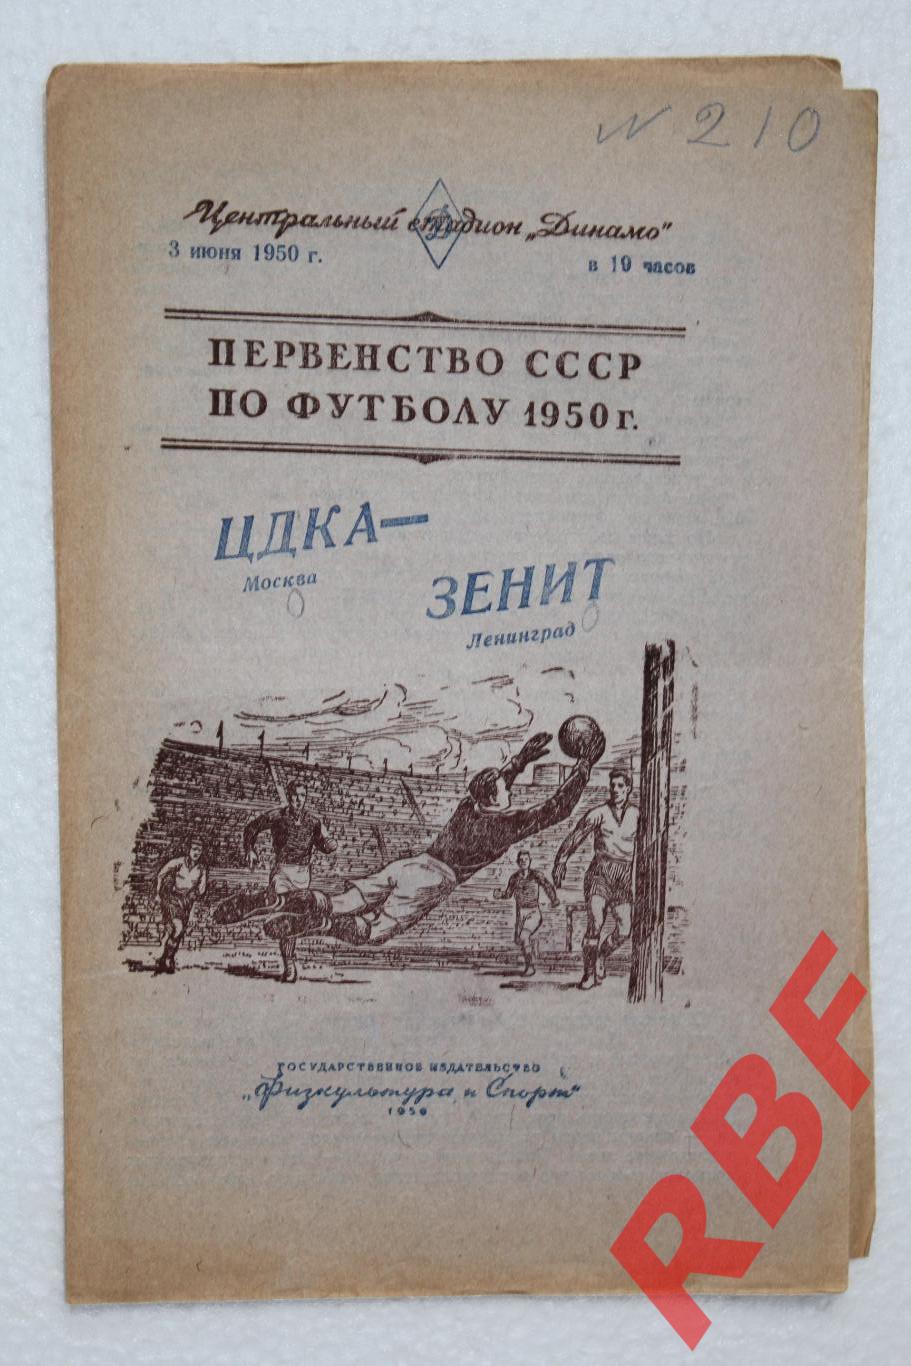 ЦДКА - Зенит,3 июня 1950